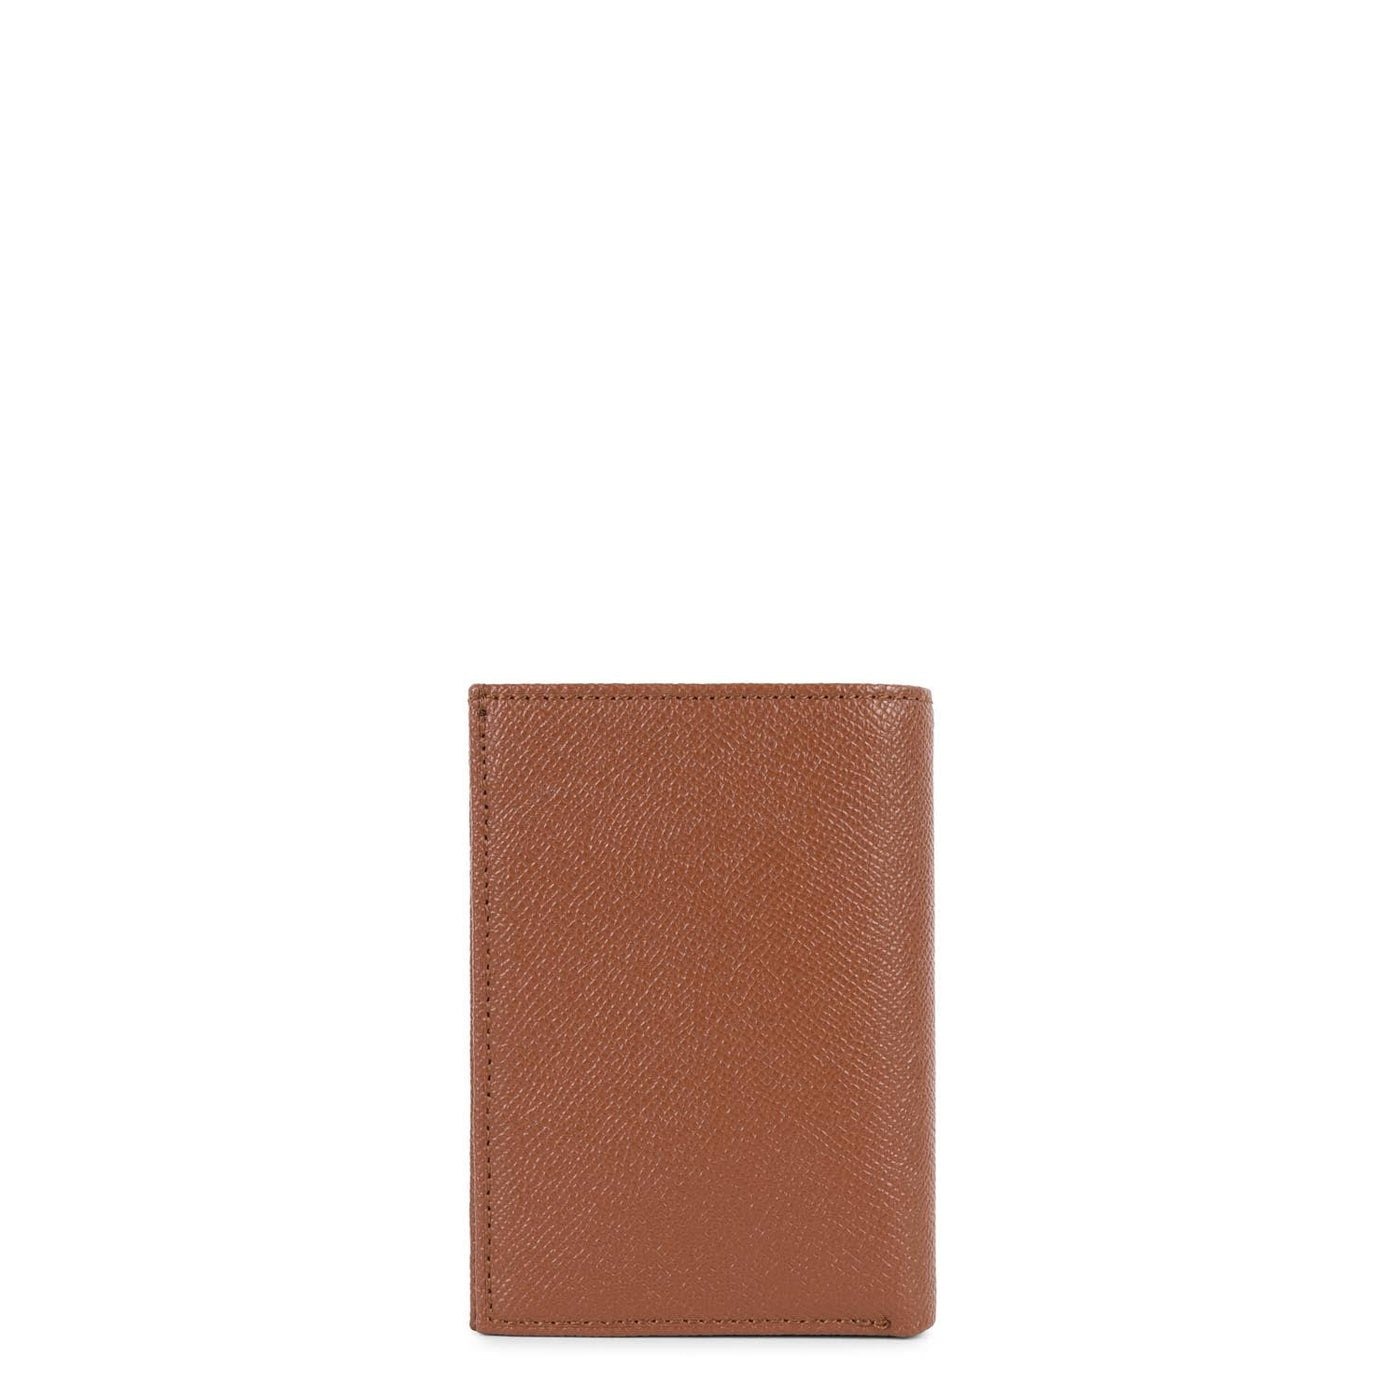 wallet - delphino lucas #couleur_cognac